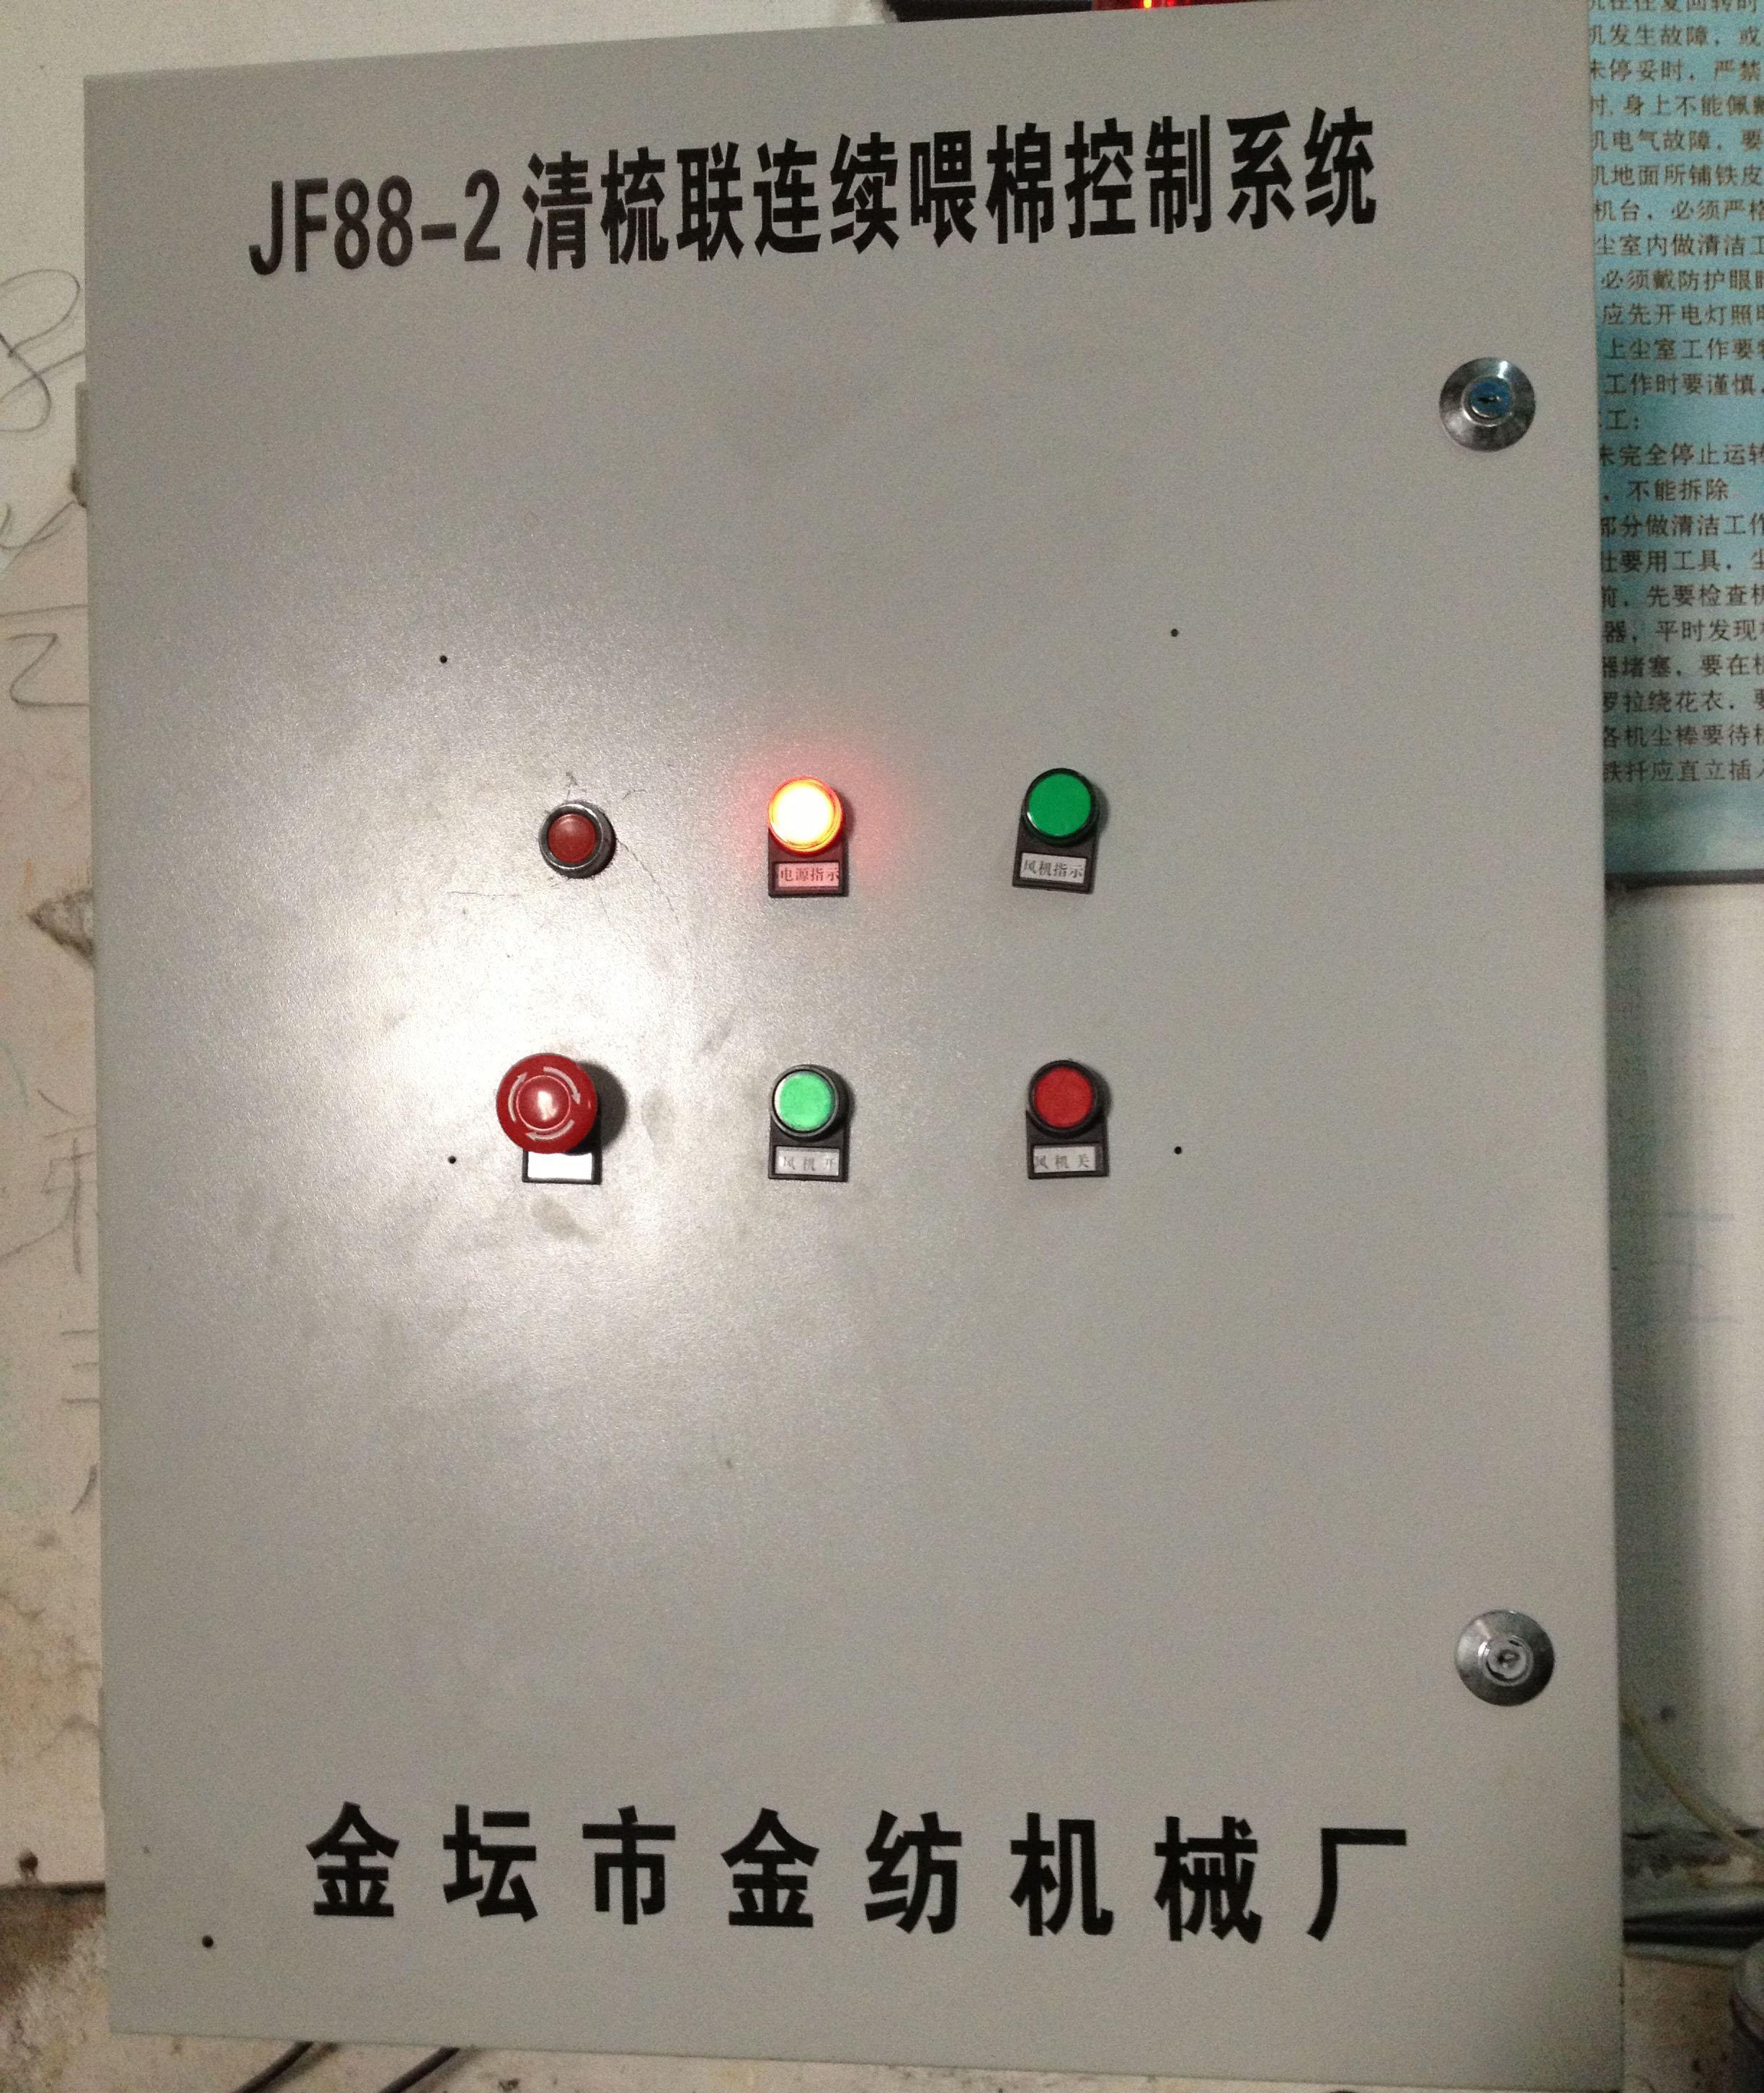 JF88-2 清梳联连续喂棉控制系统